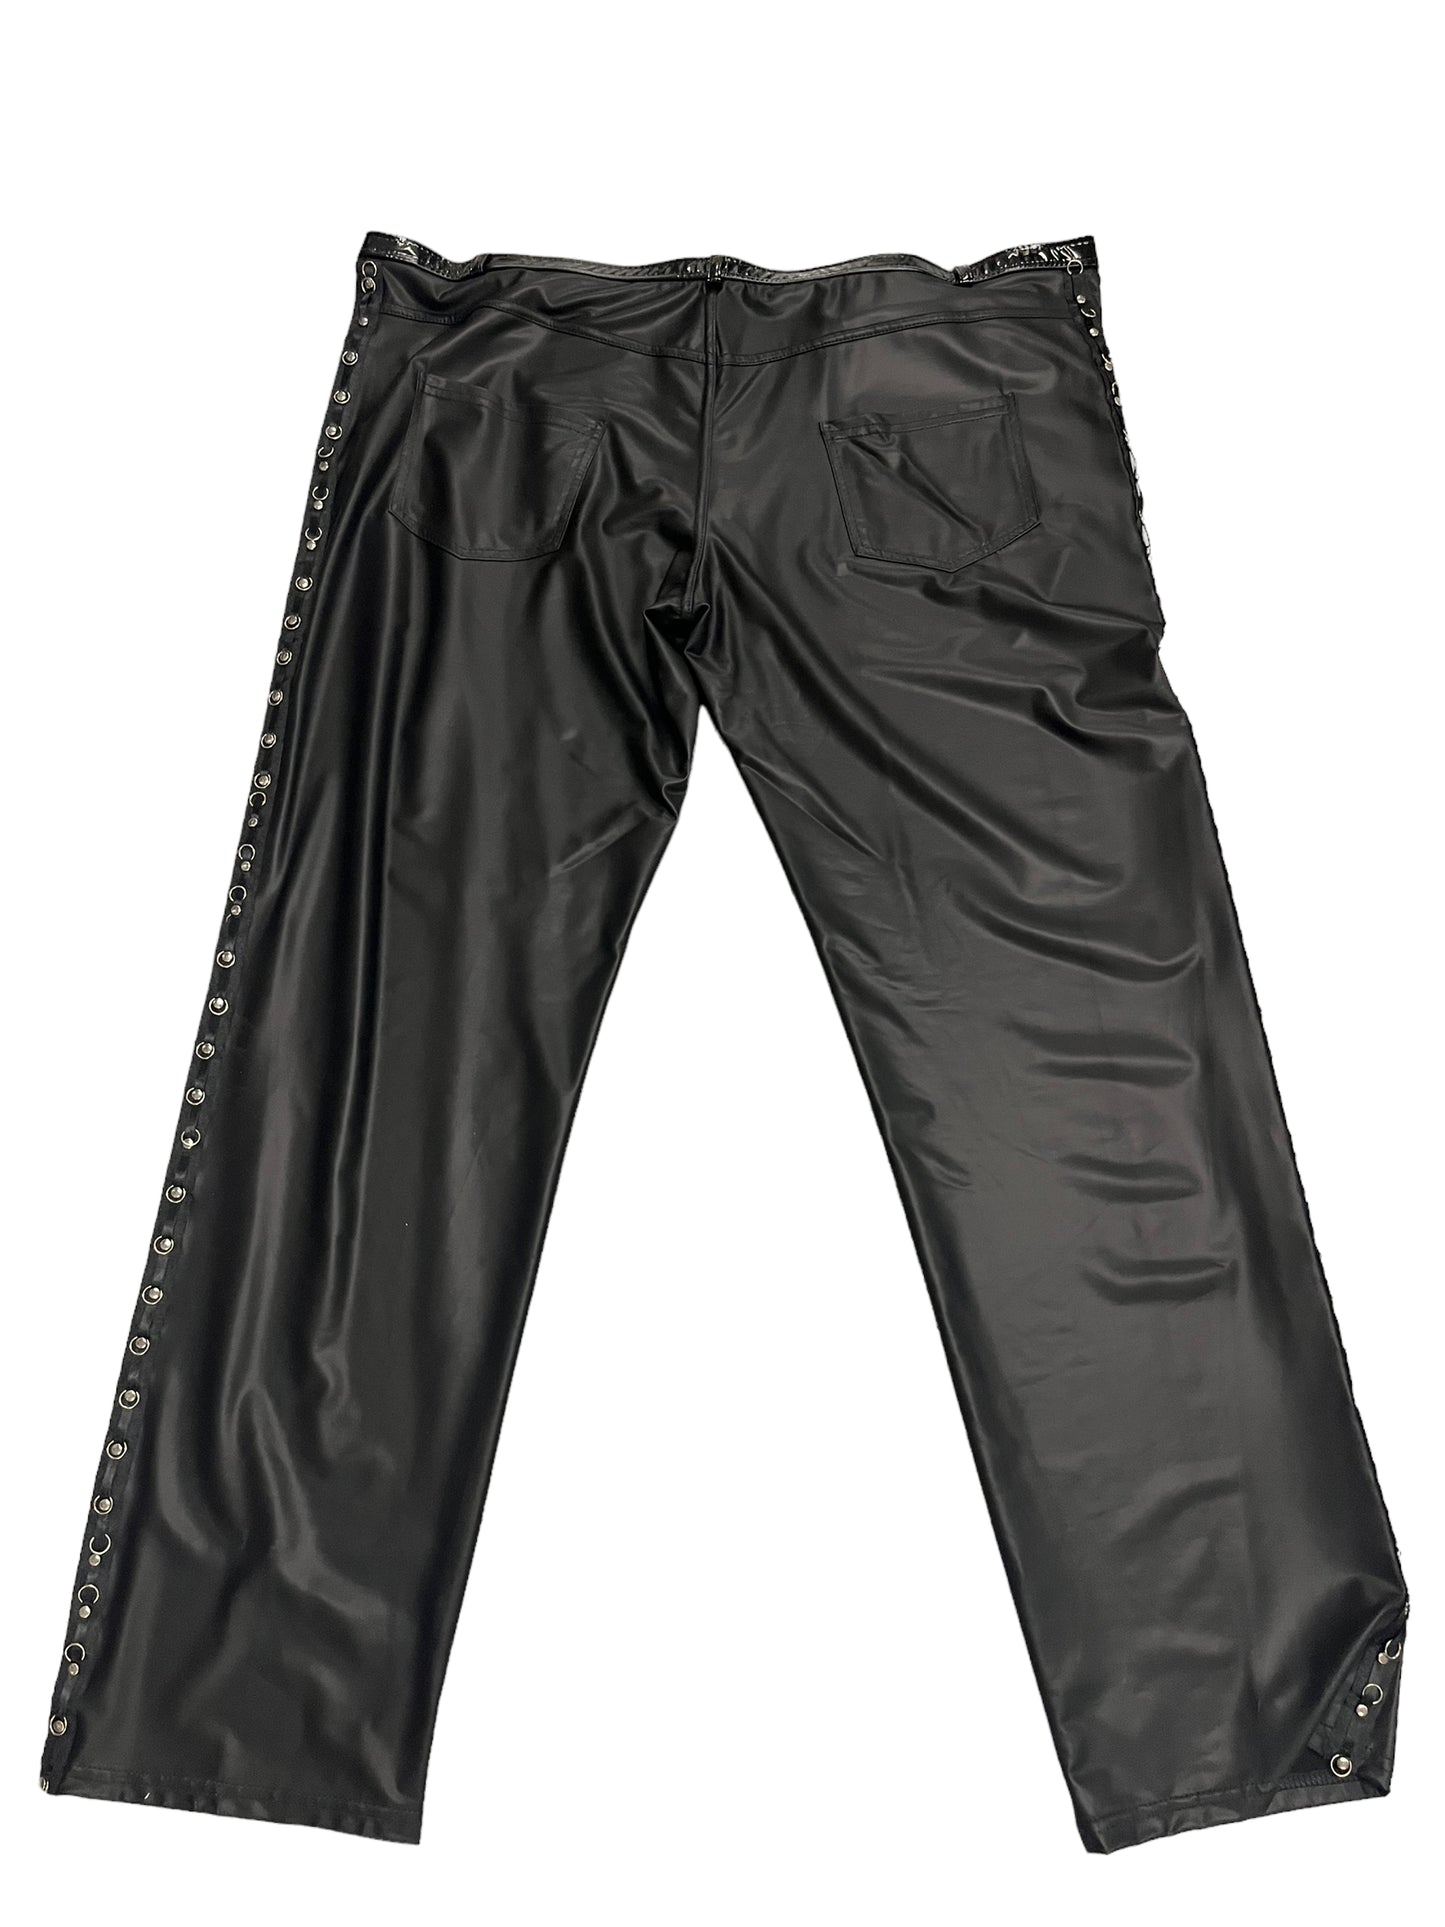 Noir - LL113 - Black Long Pants - Size 6XL